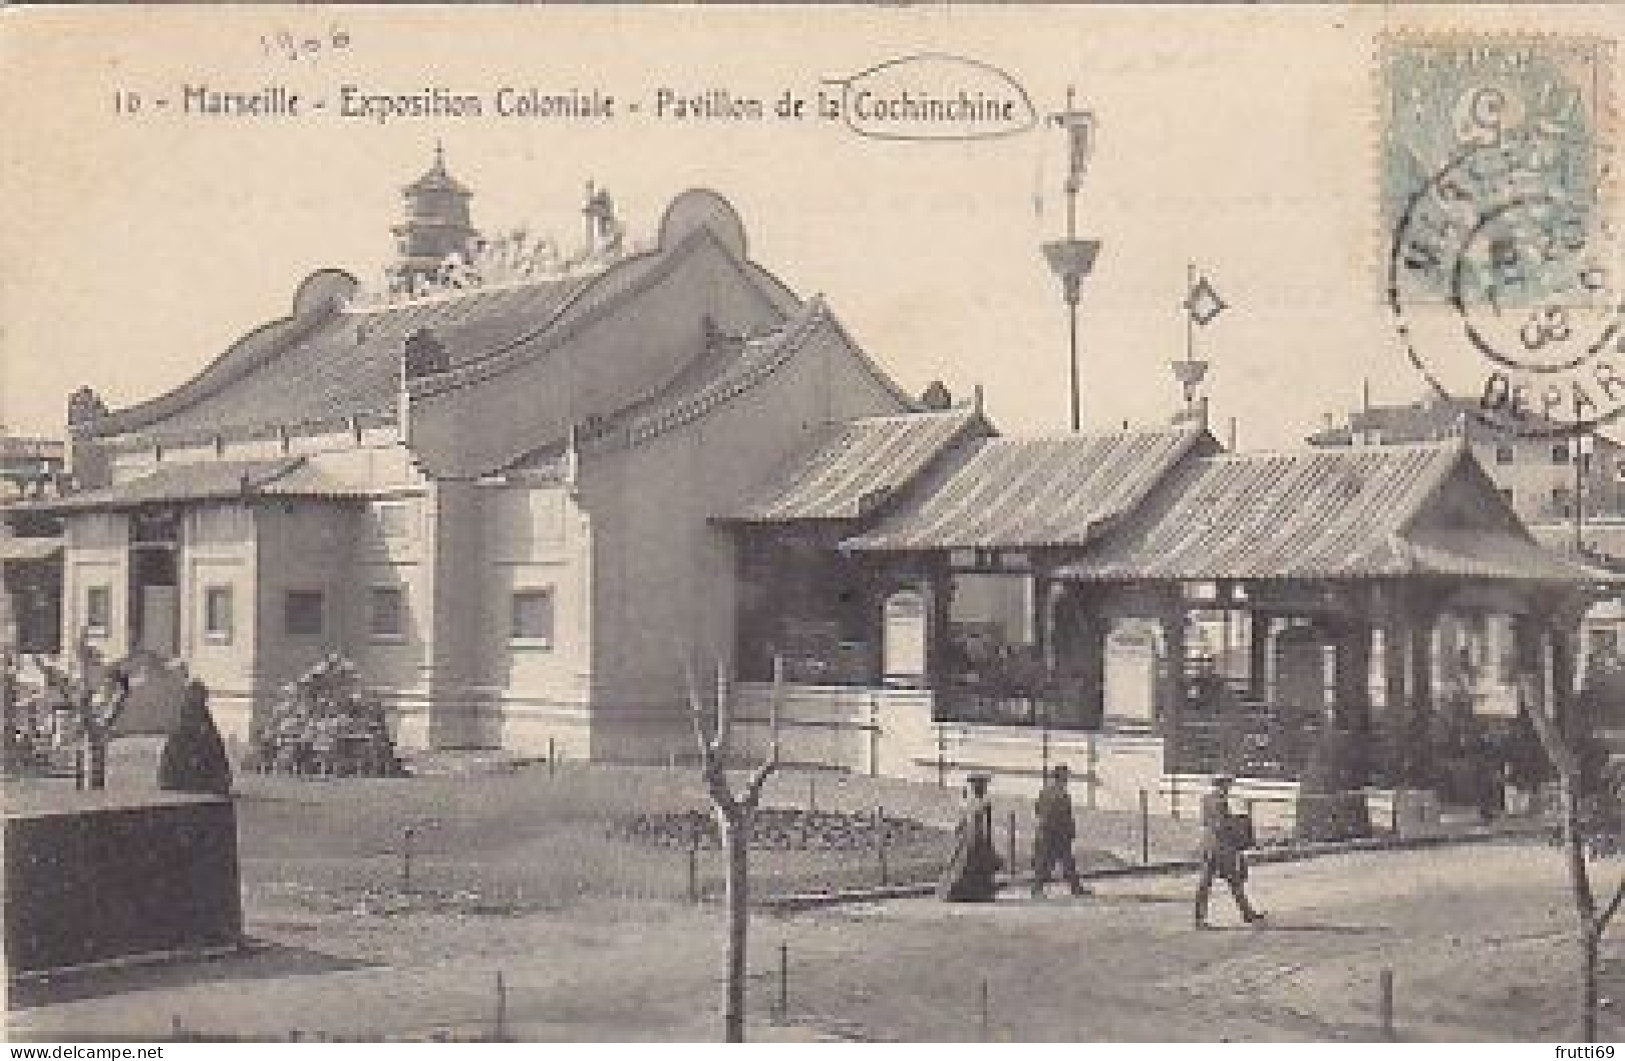 AK 216699 FRANCE - Marseille - Expoition Coloniale - Pavilion De Ls Cochinchine - Expositions Coloniales 1906 - 1922